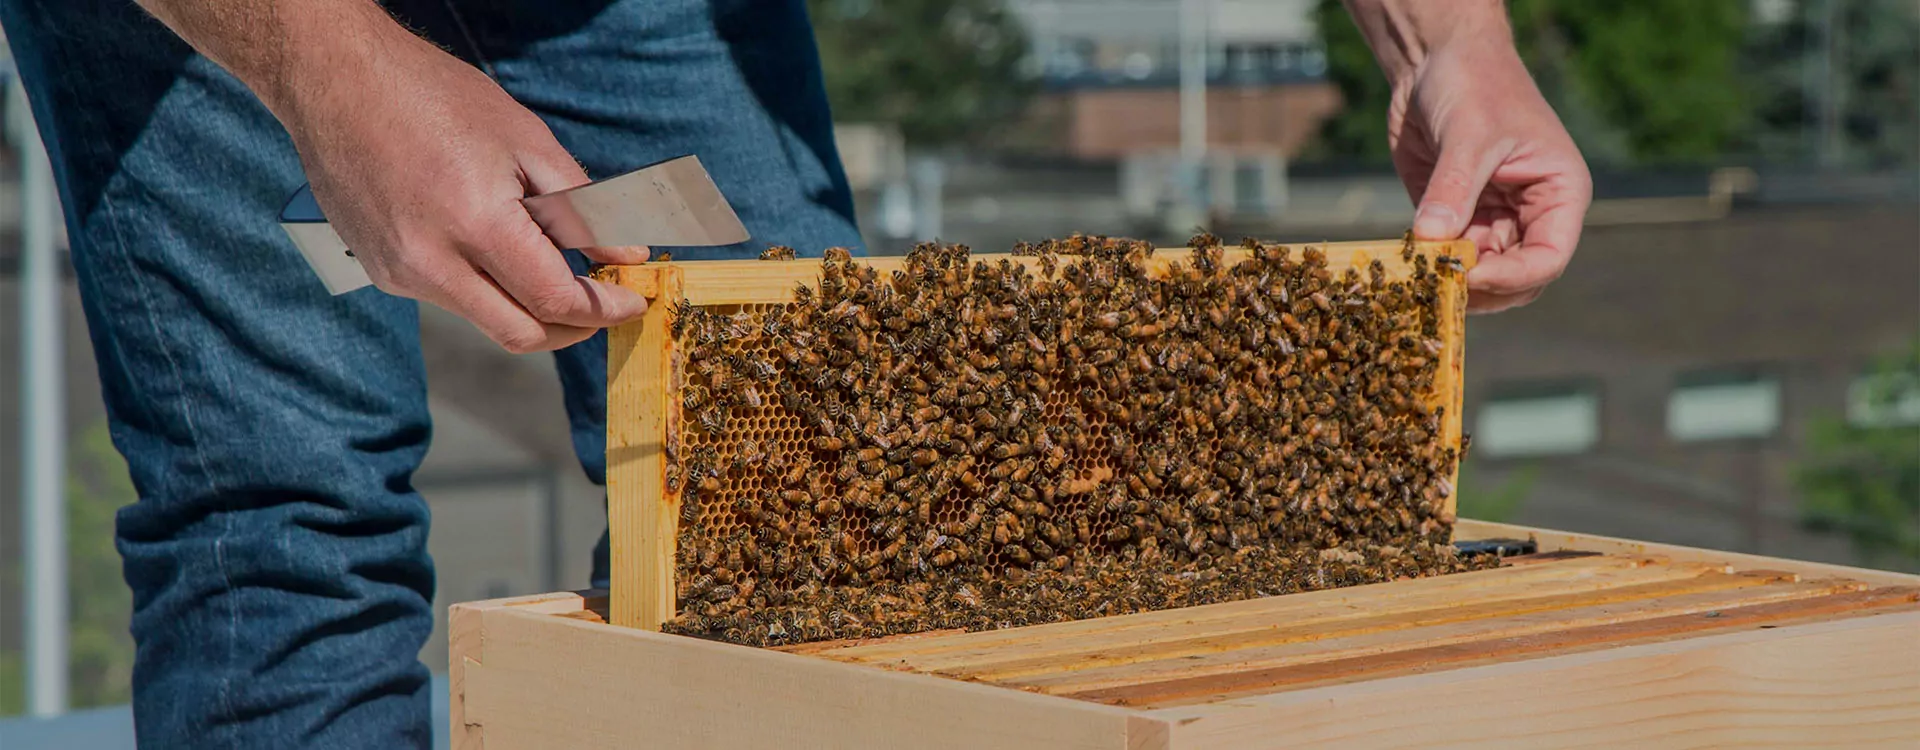 Bee-Pass®, une ruche pour observer les abeilles en toute sécurité